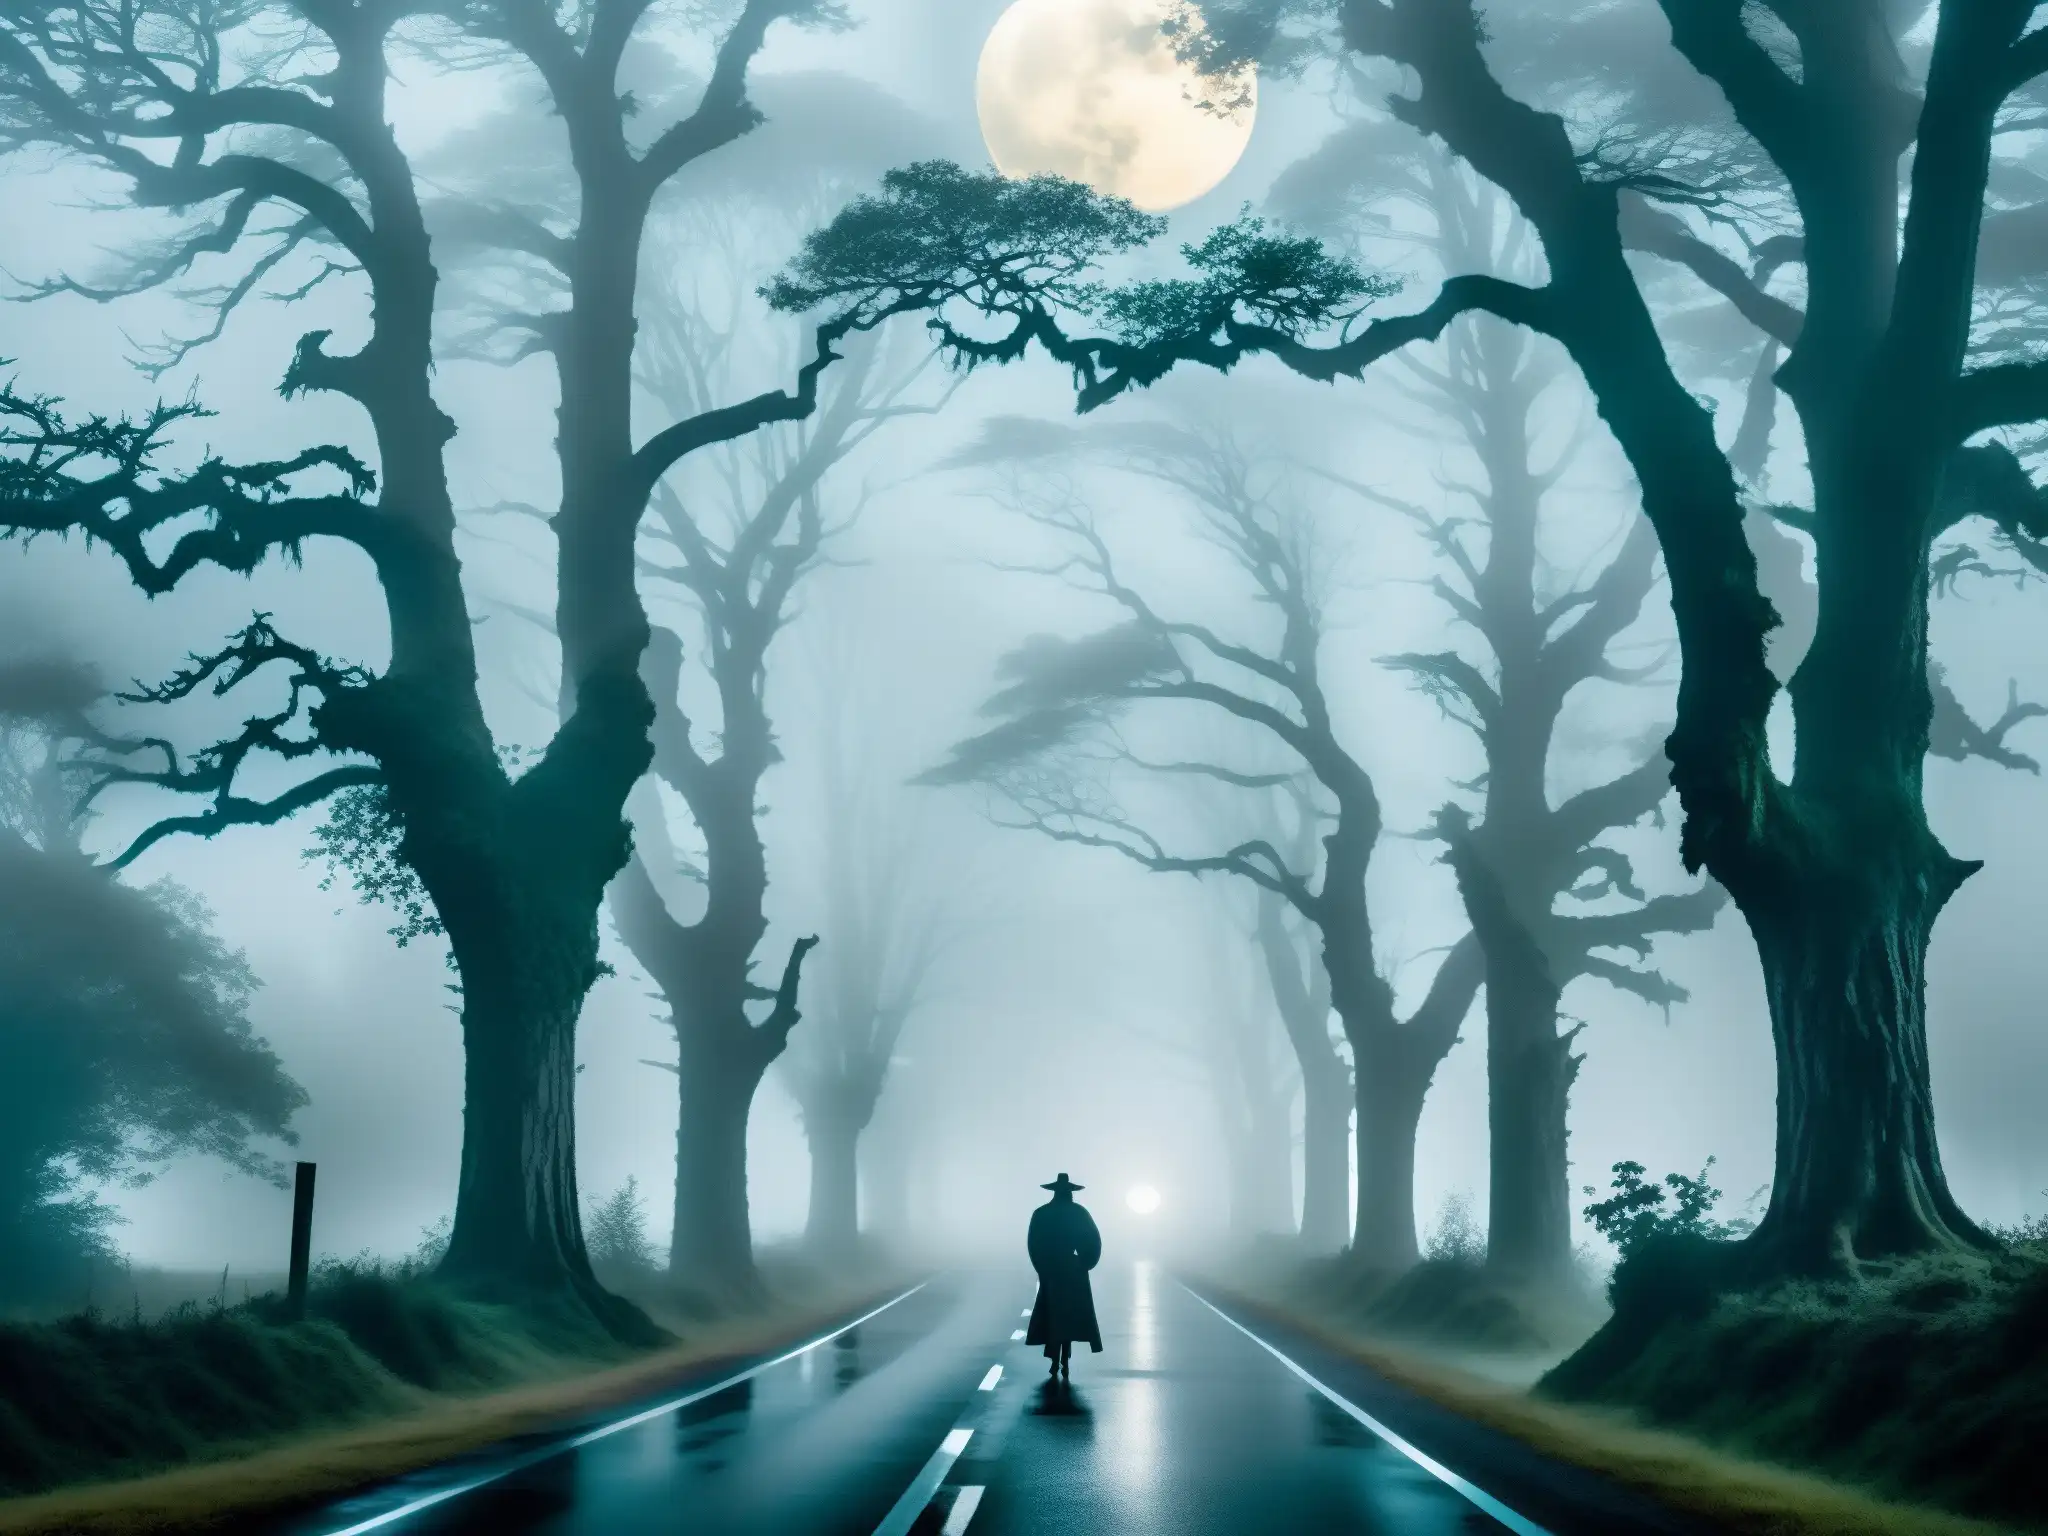 Carretera de Thane envuelta en niebla, con árboles antiguos y lúgubre luz de luna, evocando leyendas urbanas, fantasmas y misterio